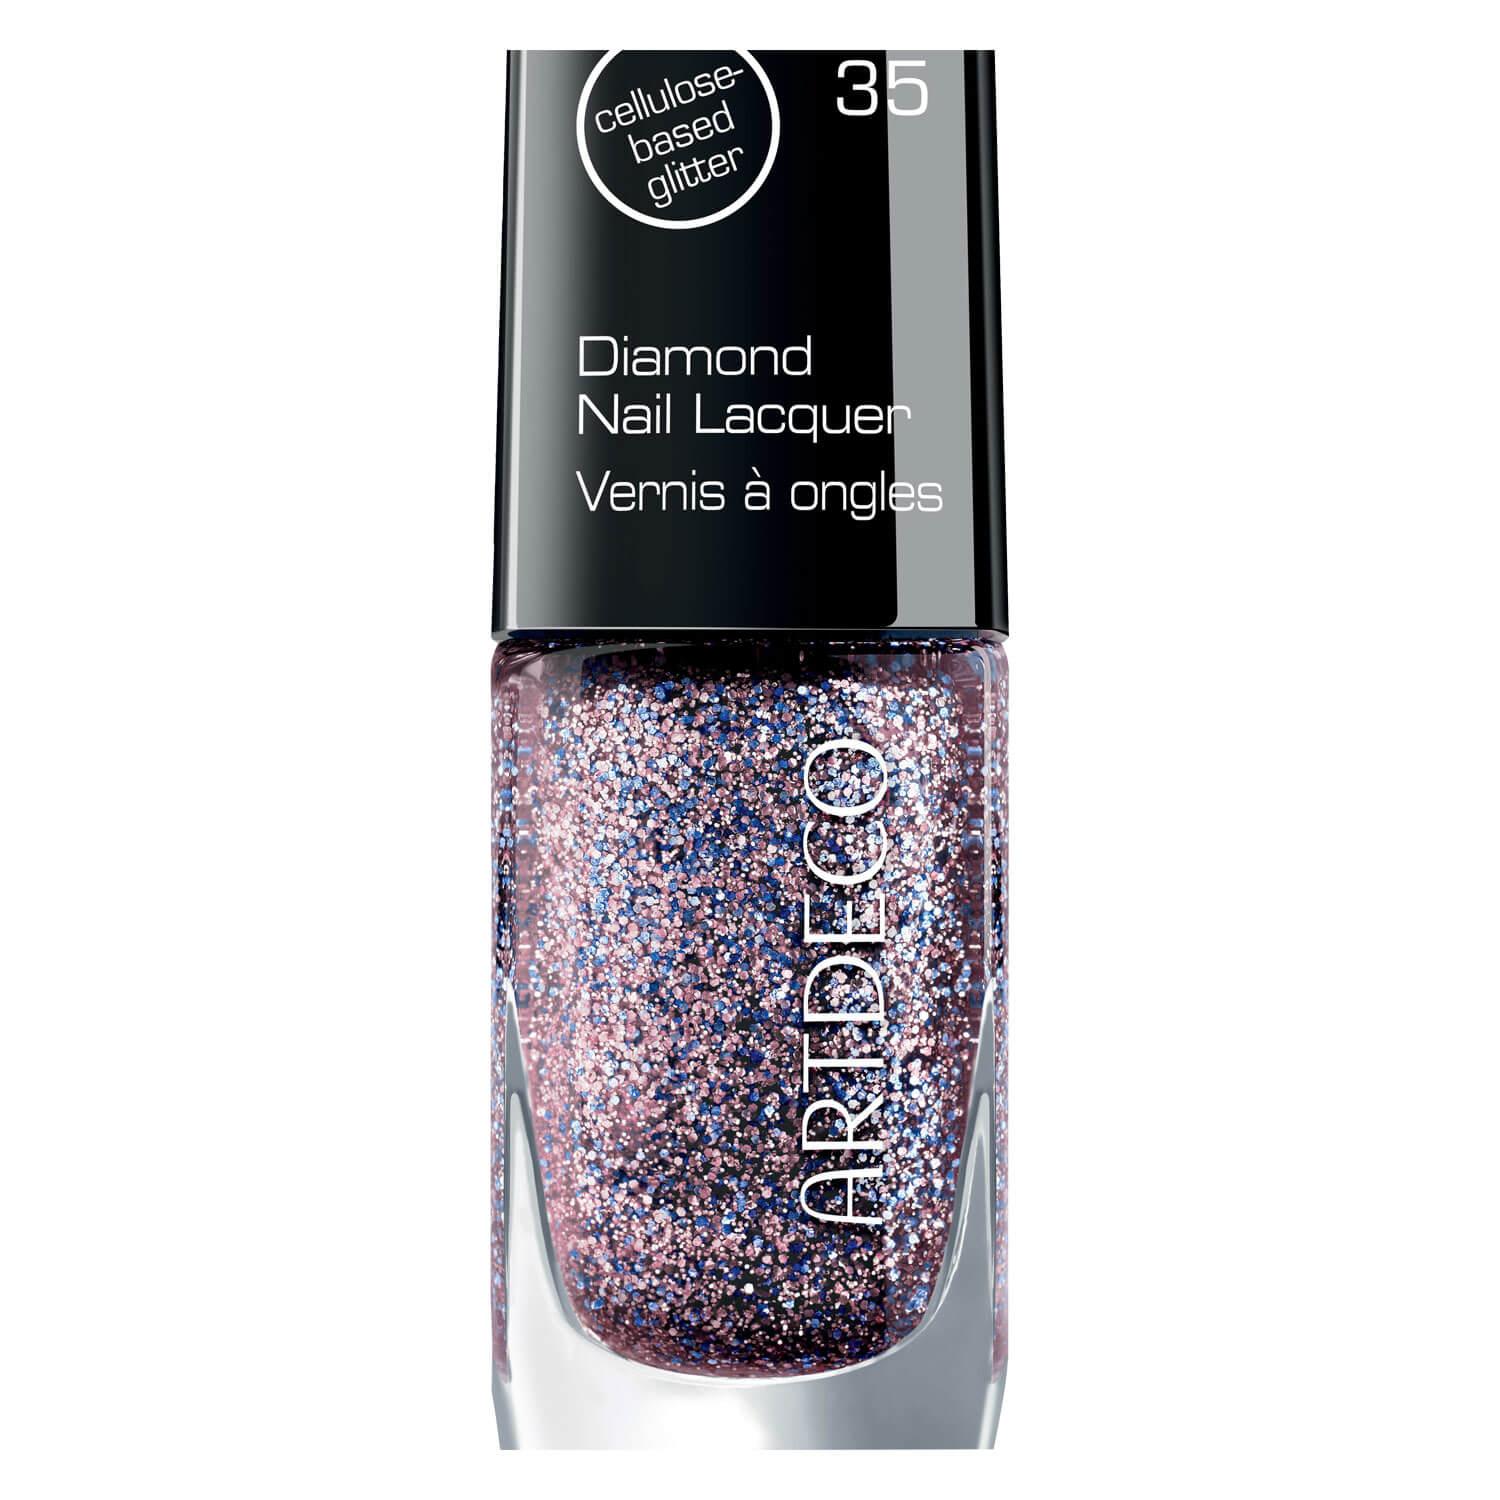 Dream of Diamonds - Nail Lacquer Glitter Confetti 35